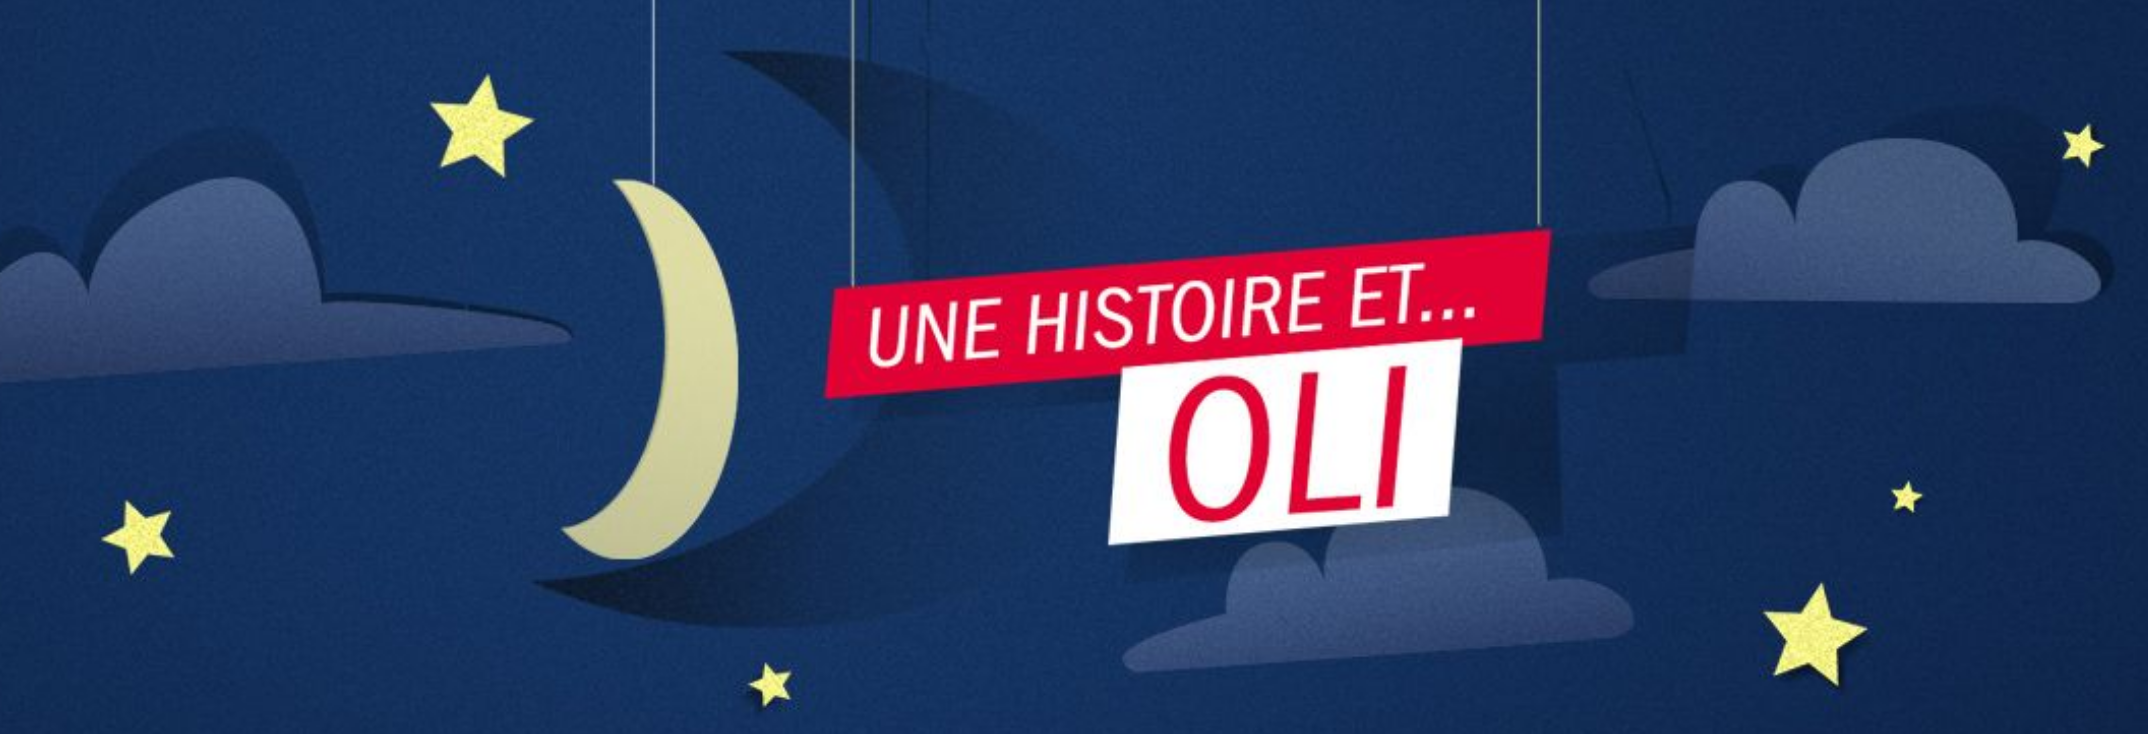 France Inter lance un podcast pour endormir les enfants